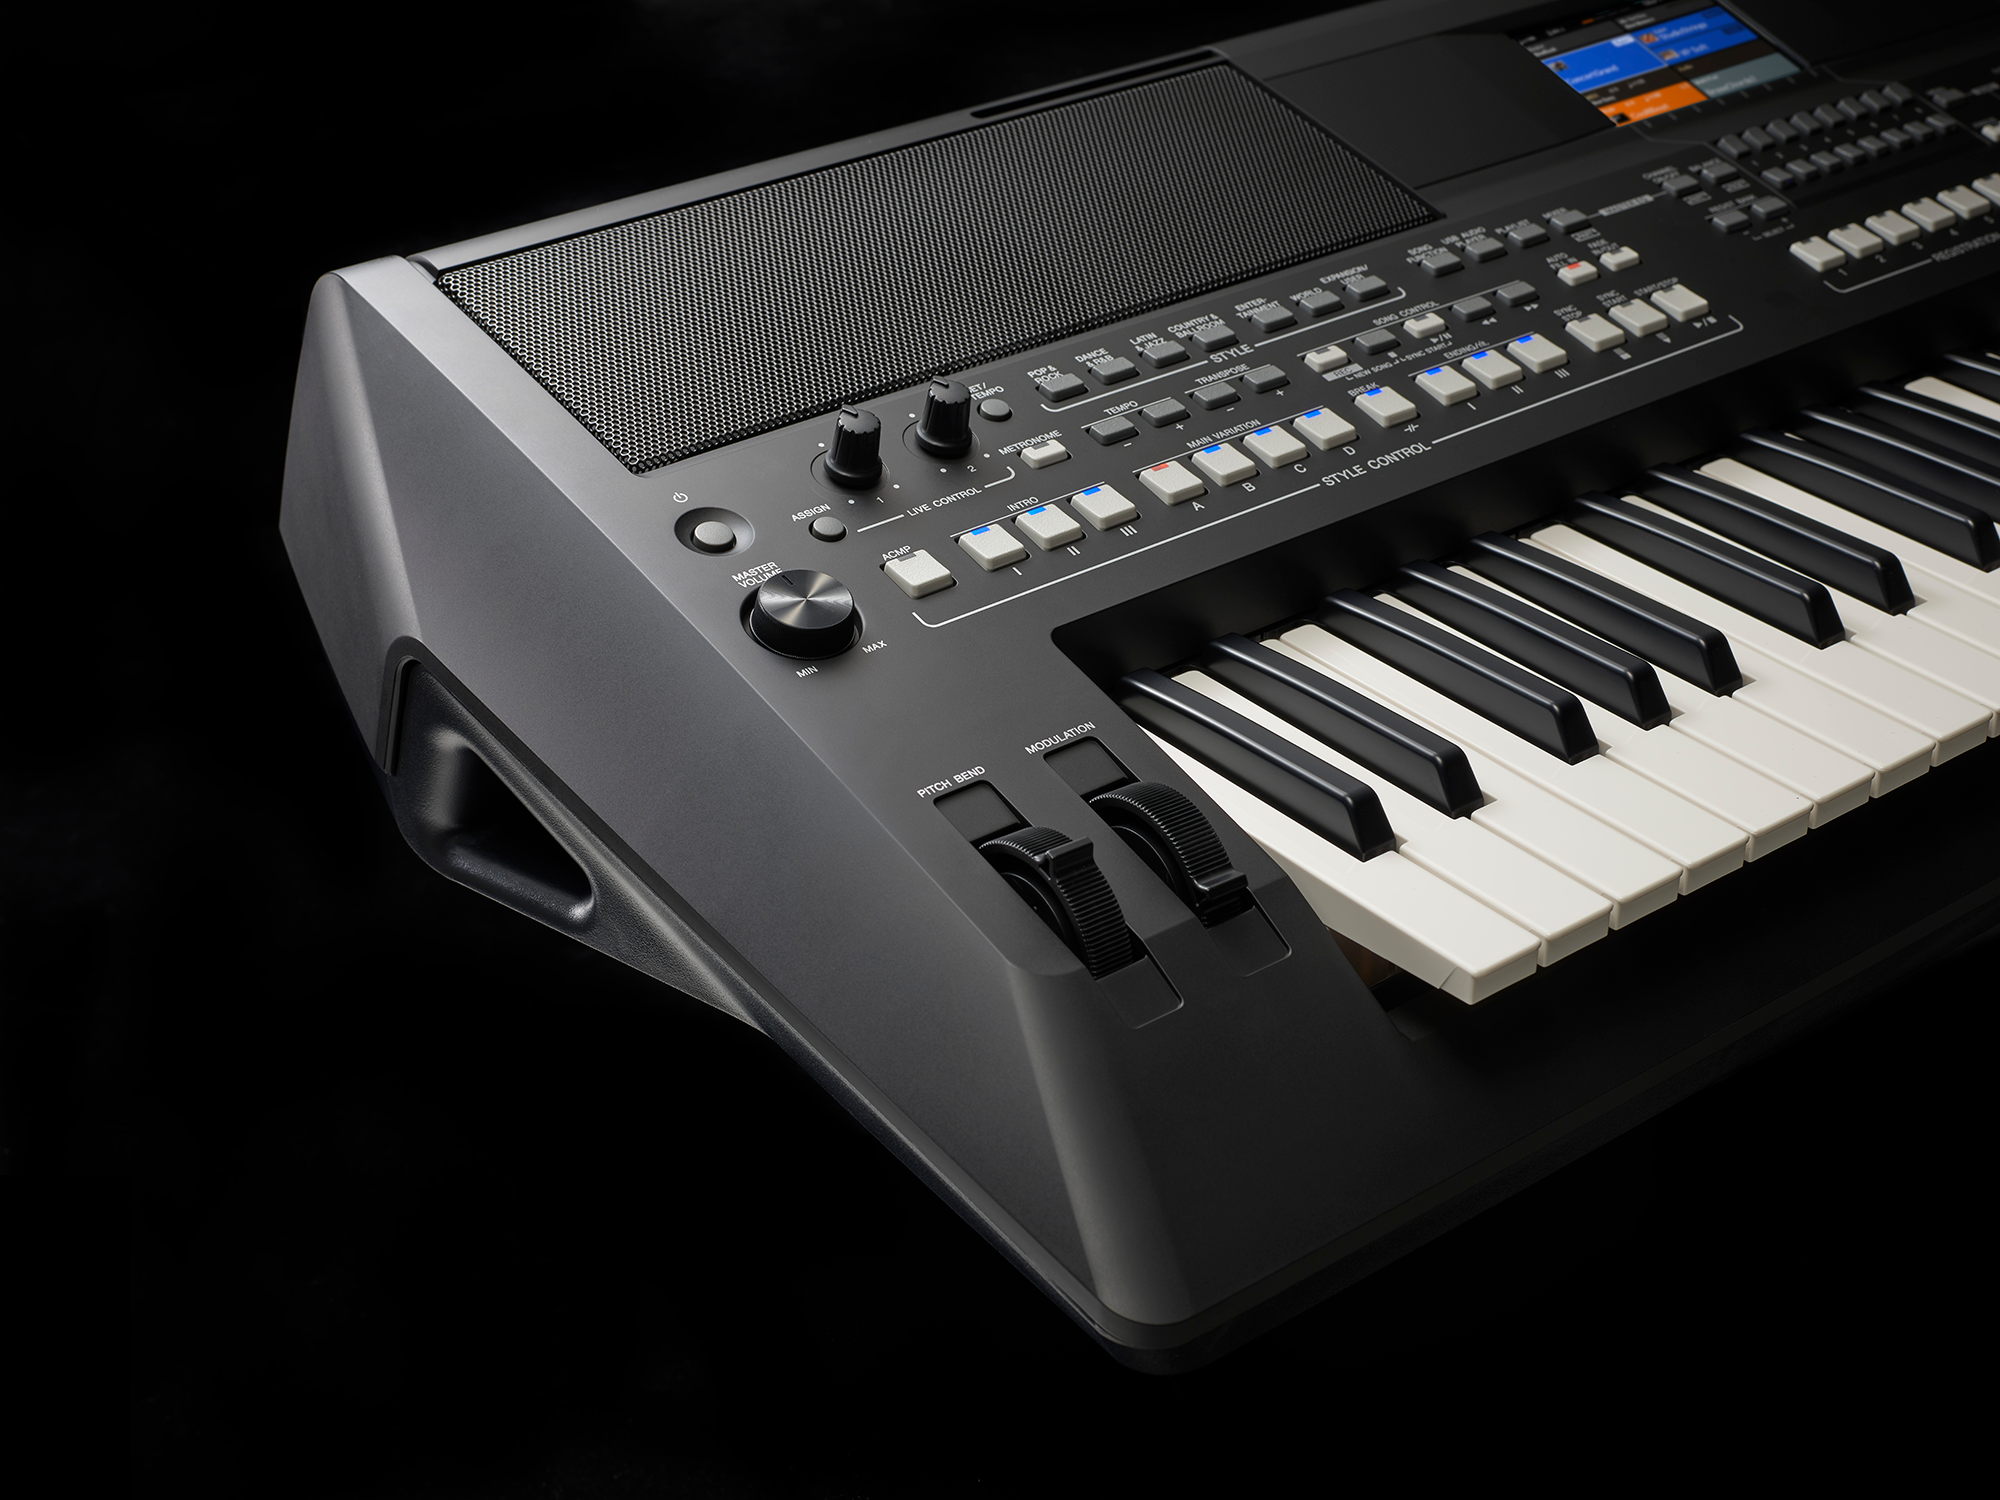 Đàn Organ điện tử chuyên nghiệp/ Digital Keyboard Workstation - Yamaha PSR-SX600 (PSR SX600) - Màu đen - Hàng chính hãng